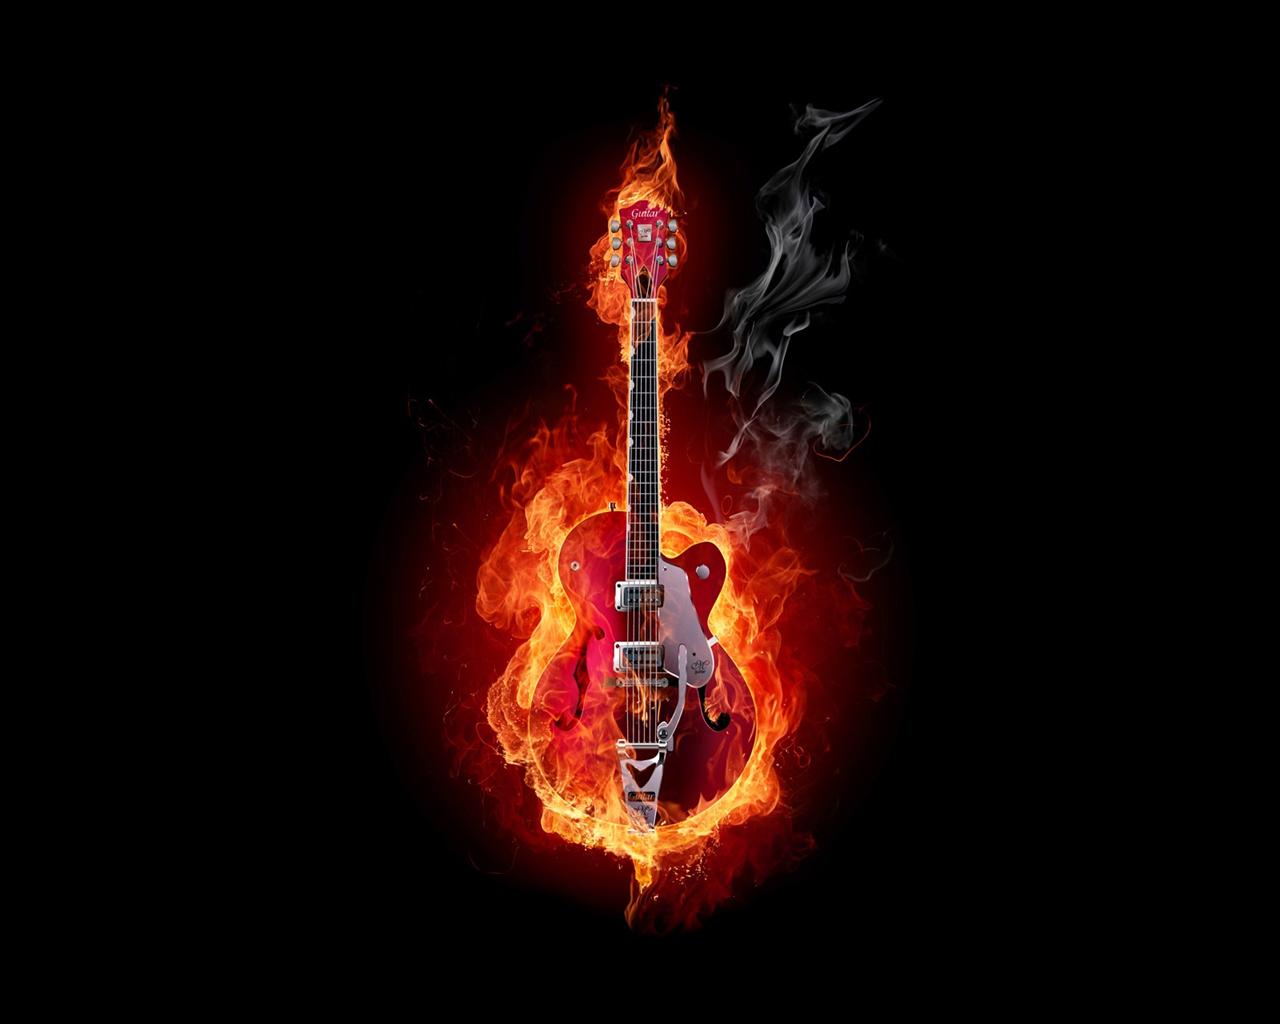  Gretsch Guitar Burning Desktop Wallpaper Background Desktop Wallpaper